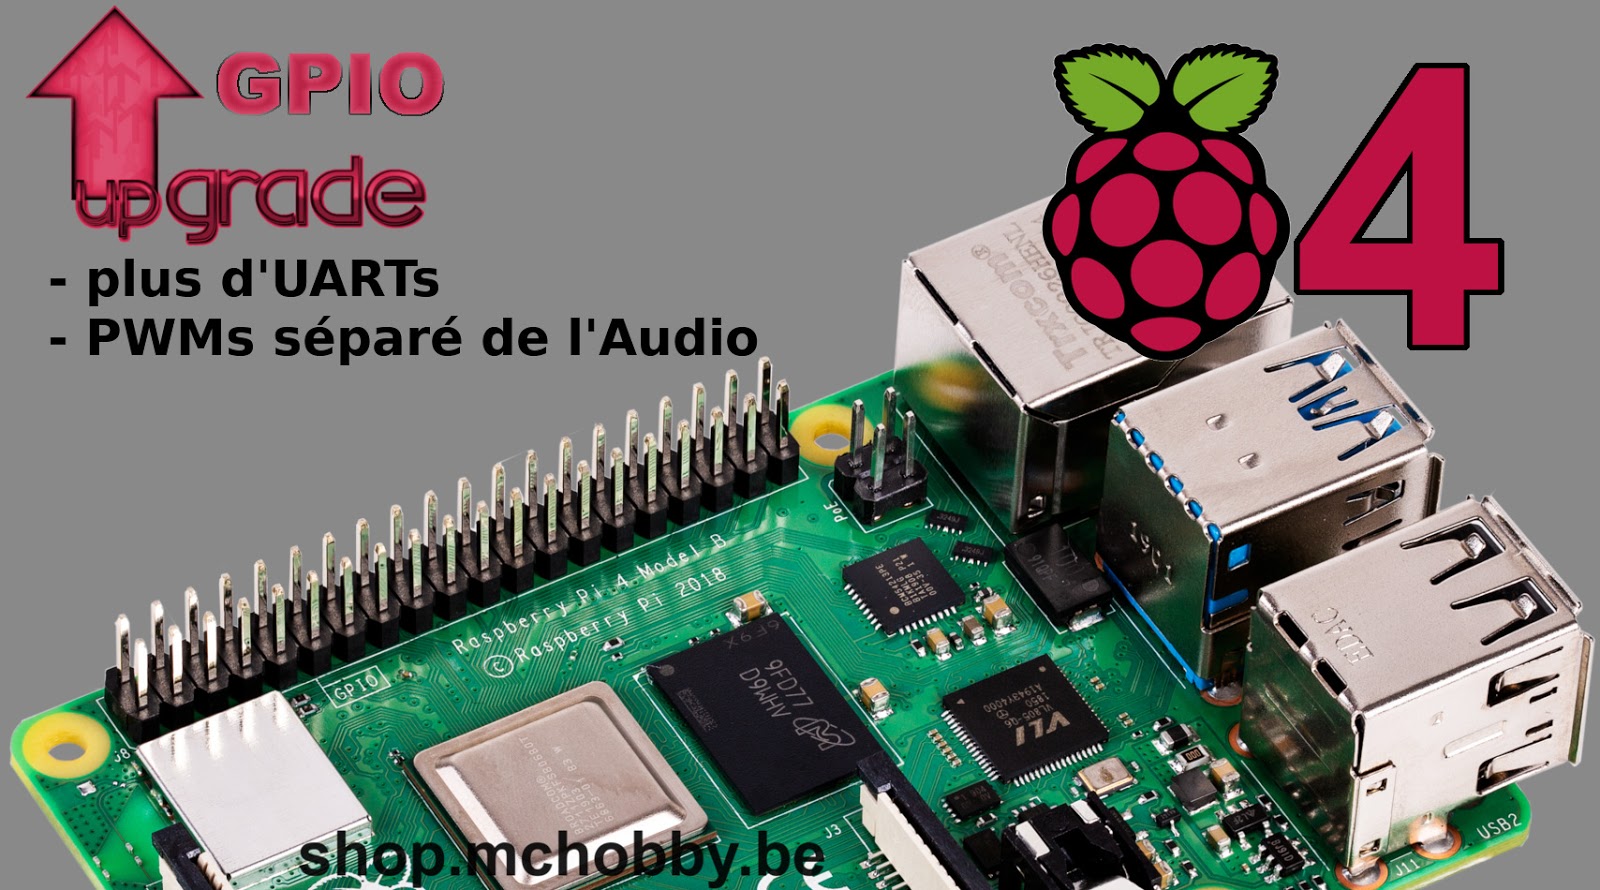 Raspberry-pi 4 : la révolution technologique au sein de la